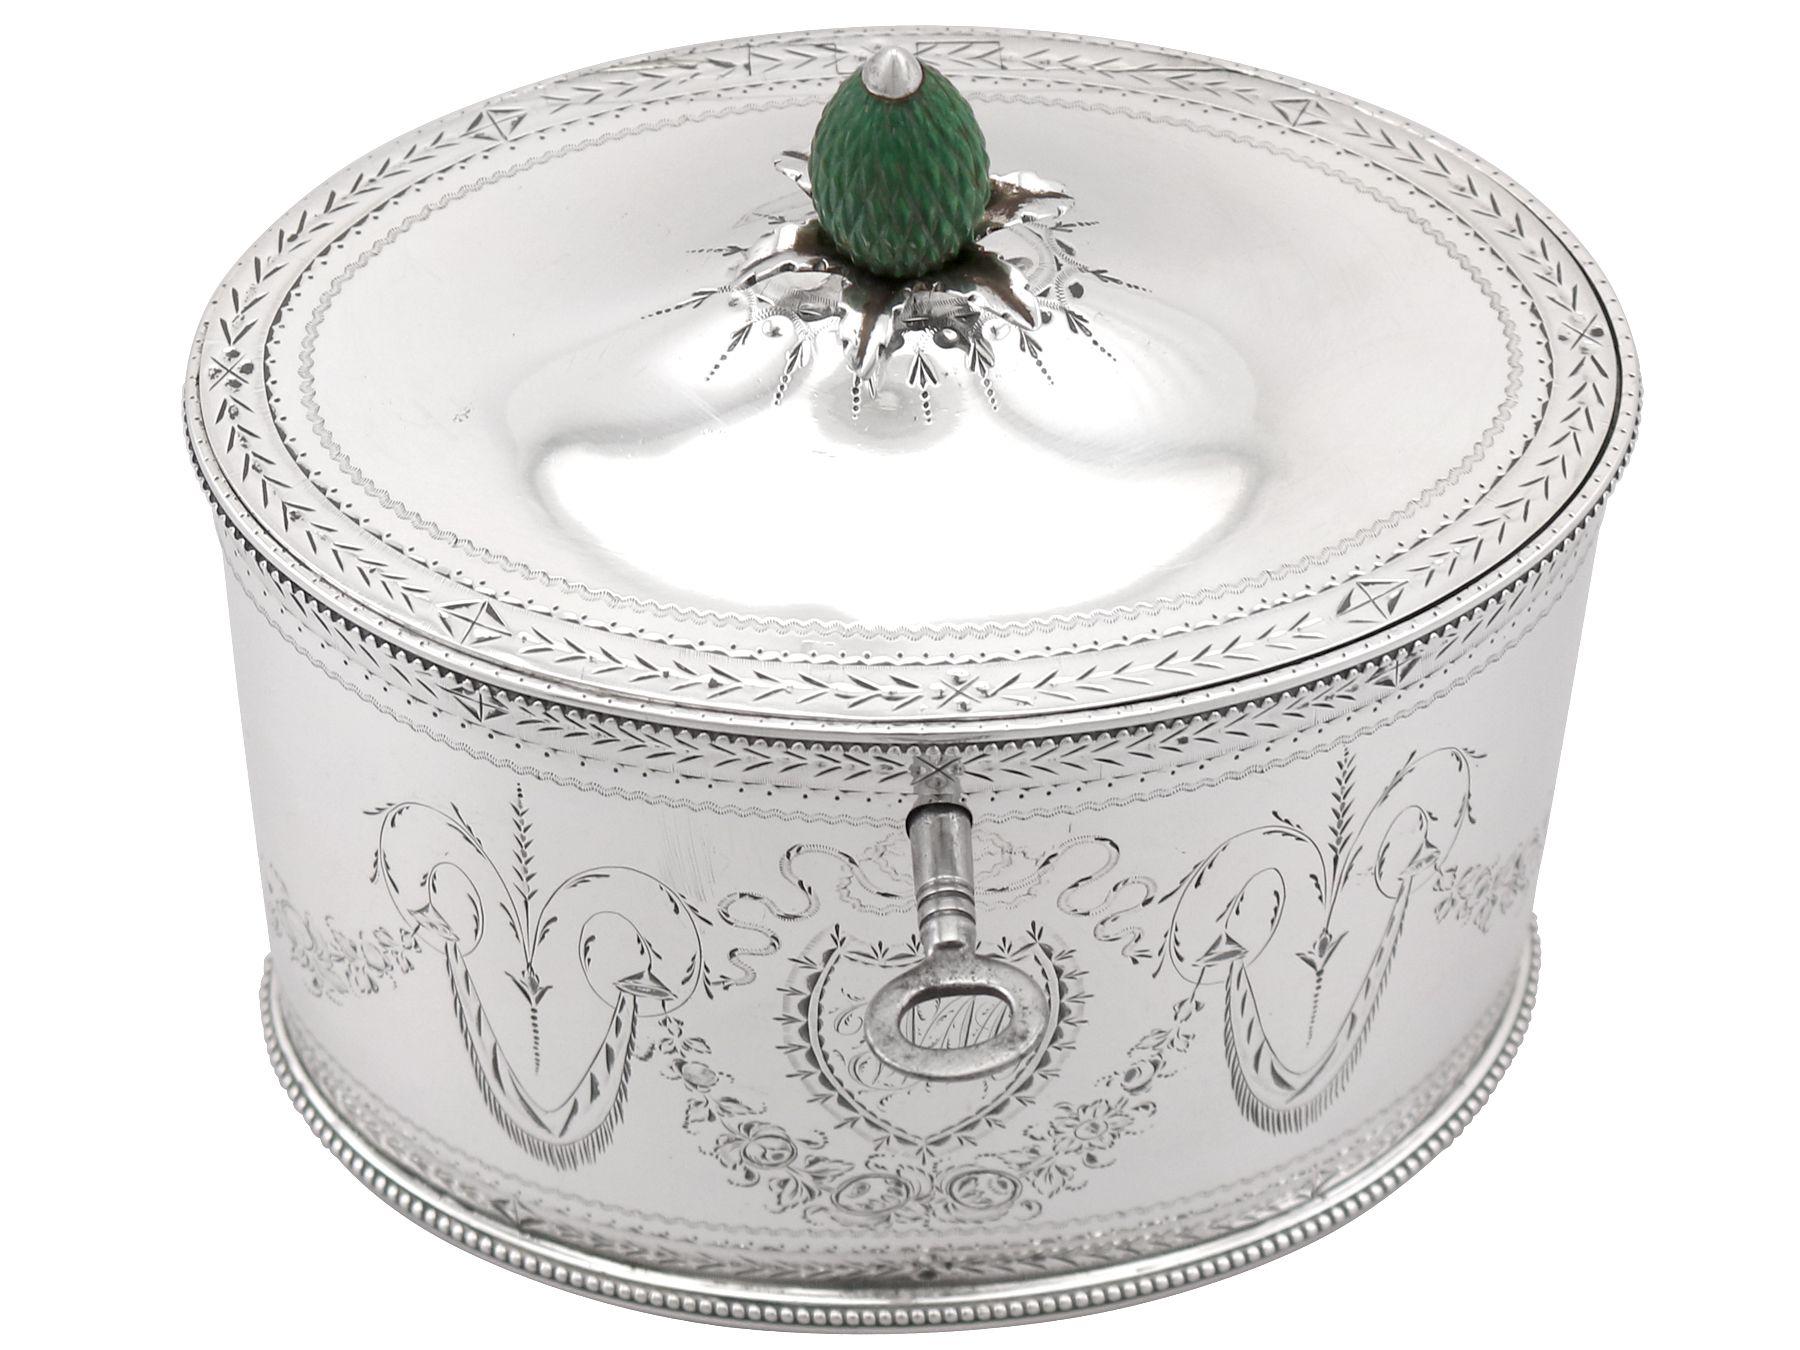 Eine außergewöhnliche, feine und beeindruckende antike georgianische englische Teedose aus Sterlingsilber von Henry Chawner; eine Ergänzung zu unserer Silberteegeschirr-Sammlung.

Diese außergewöhnliche antike Teedose aus georgianischem